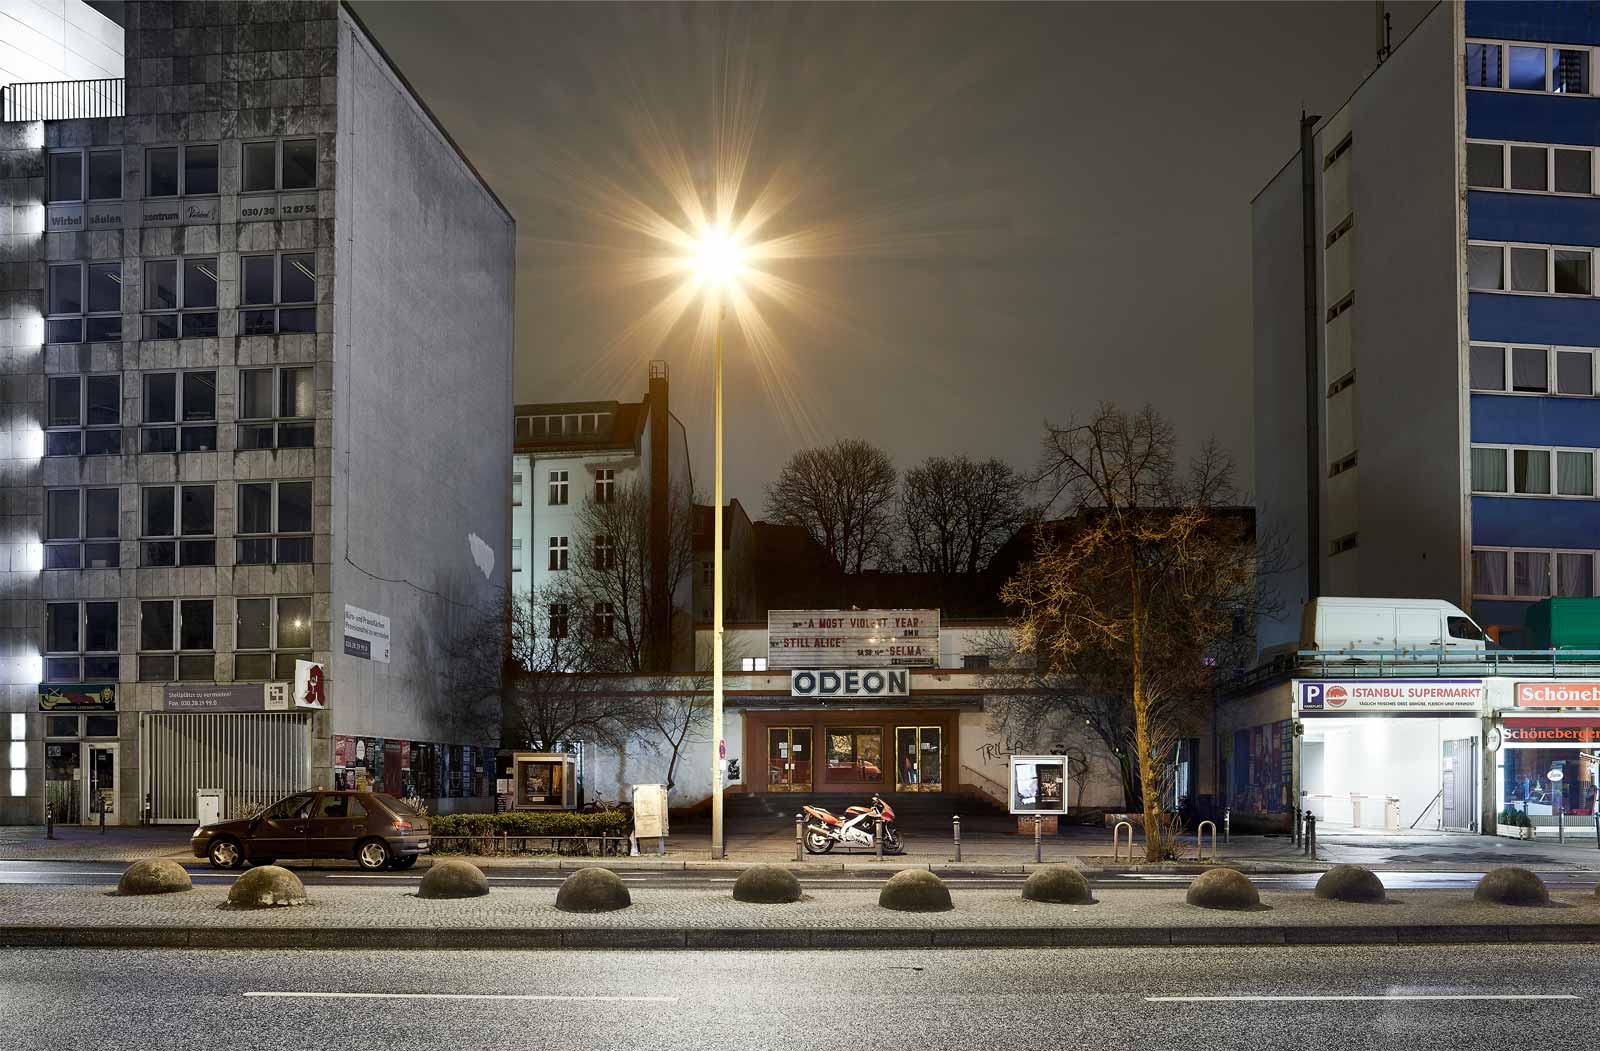 foto: manfred bogner, berlin, mind the gap